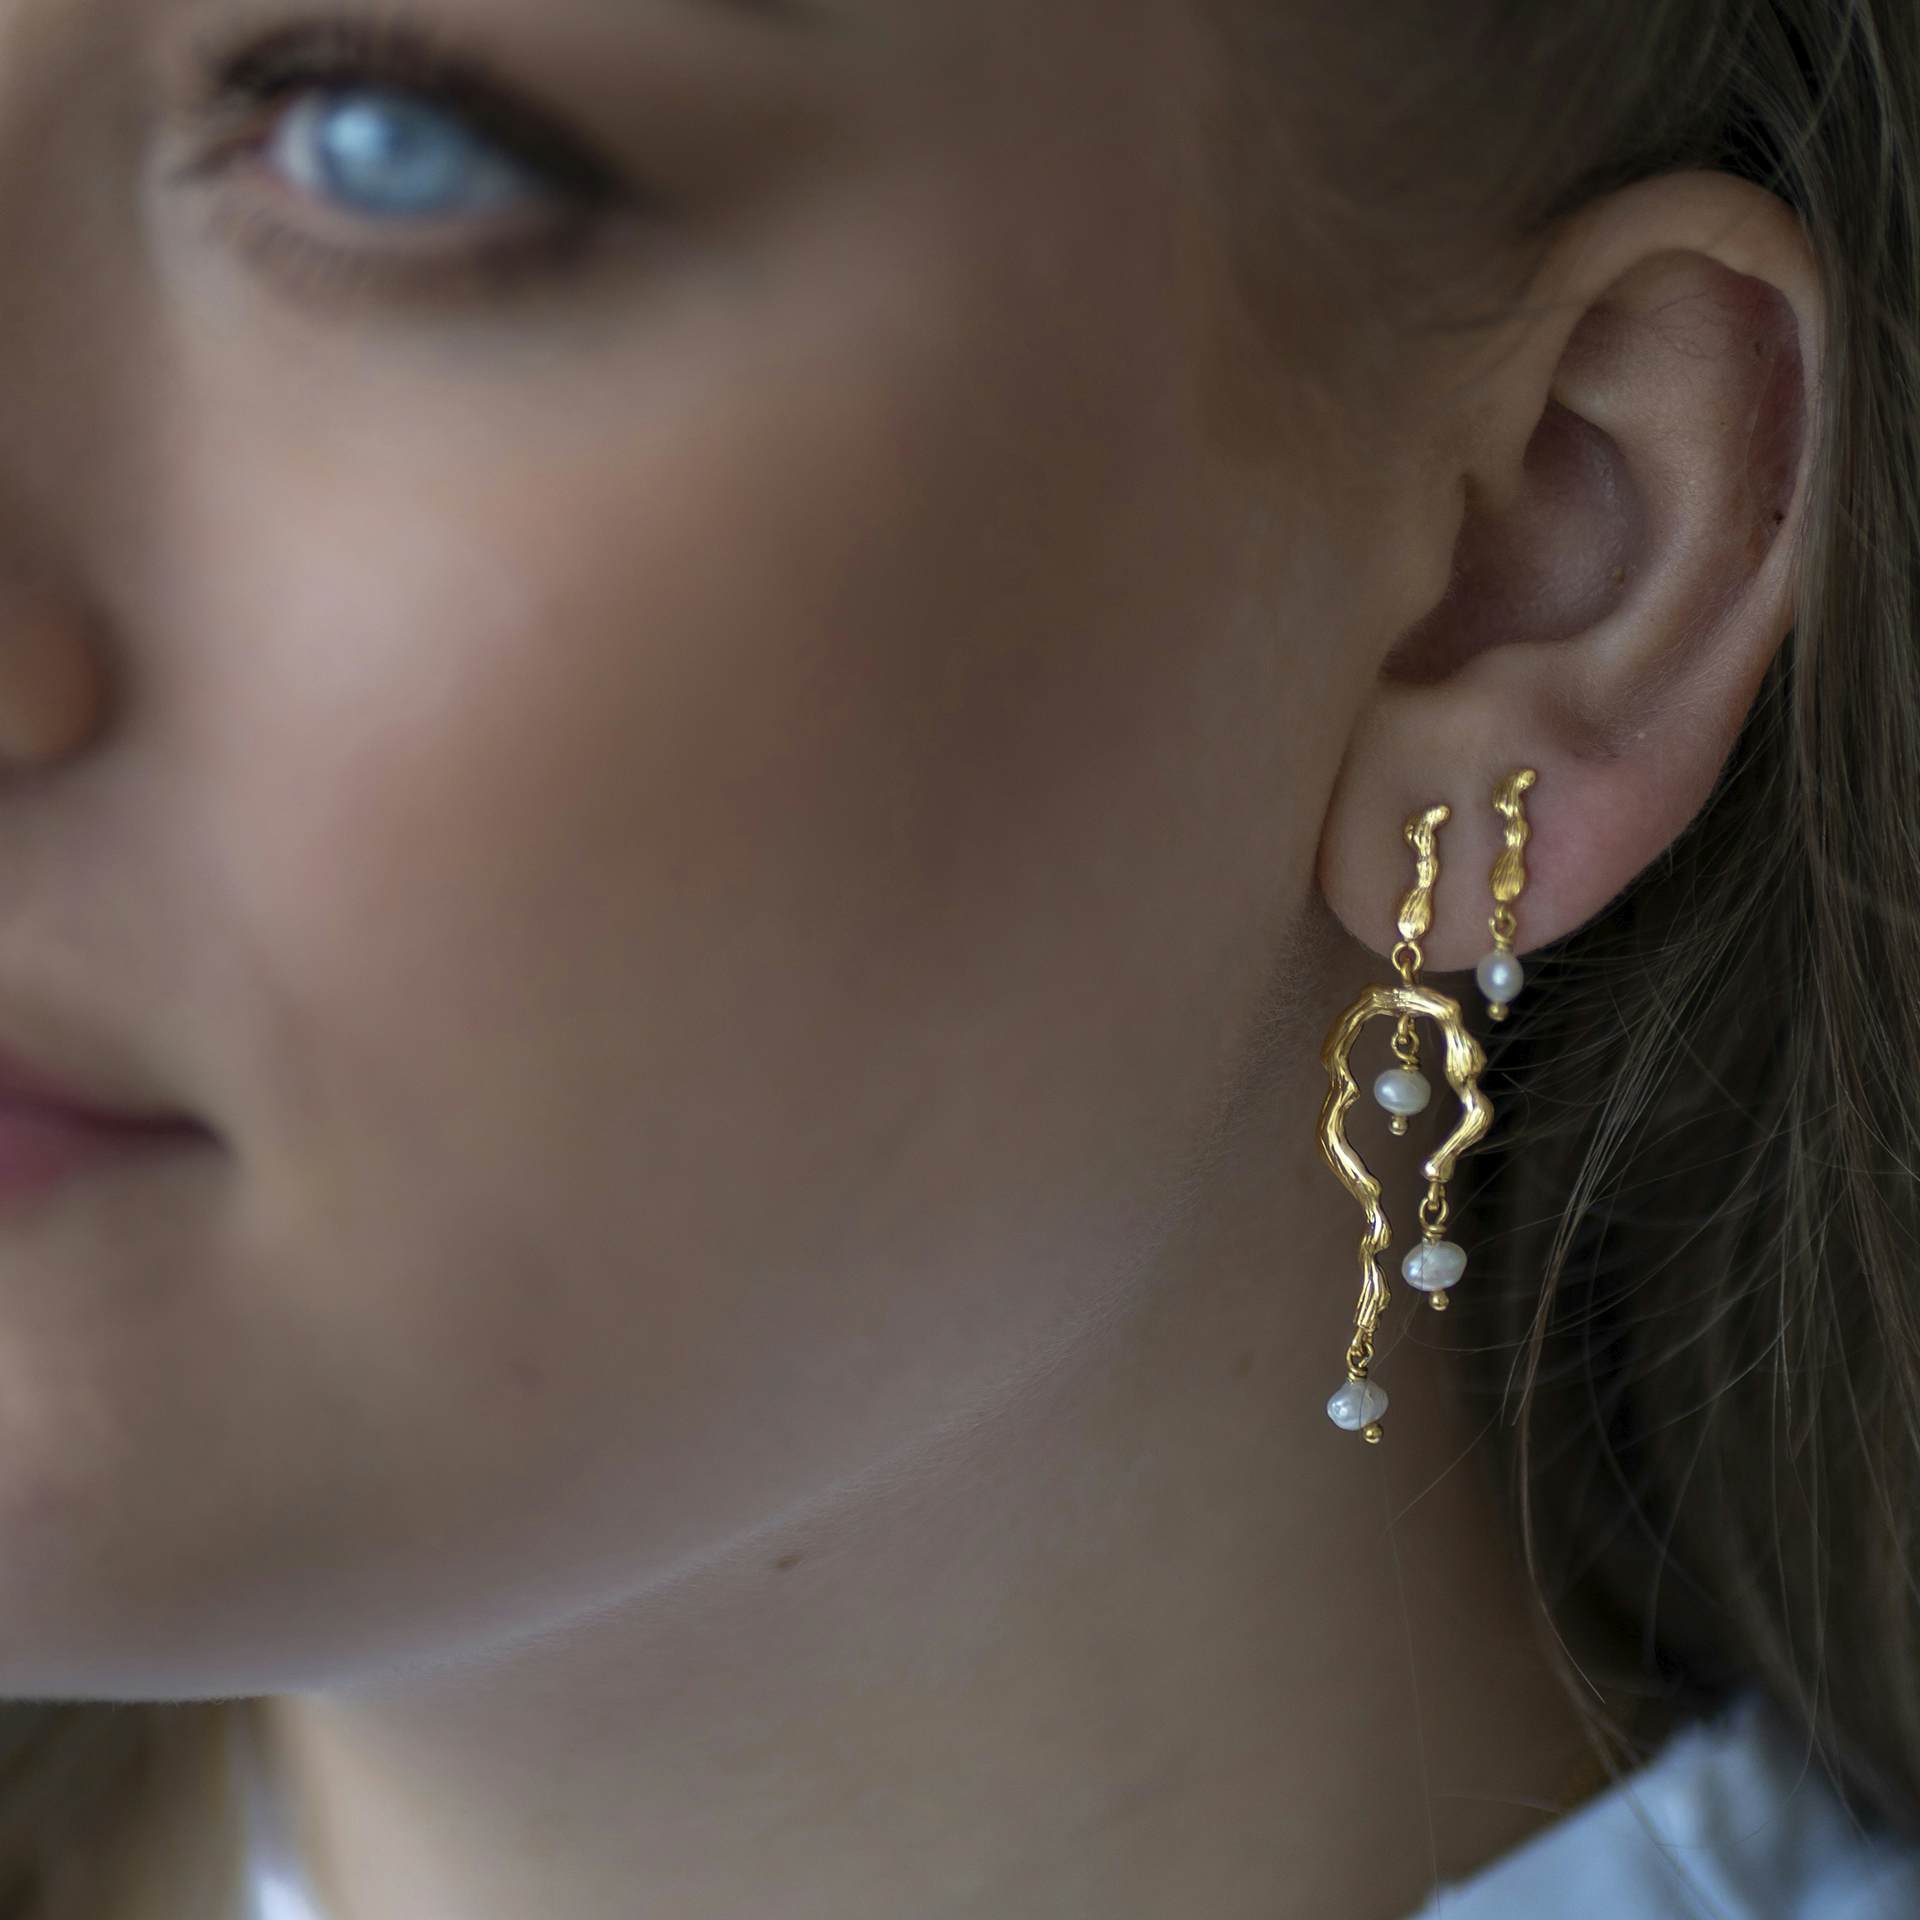 Lærke Bentsen By Sistie Long Earrings With Pearls von Sistie in Vergoldet-Silber Sterling 925|Freshwater Pearl